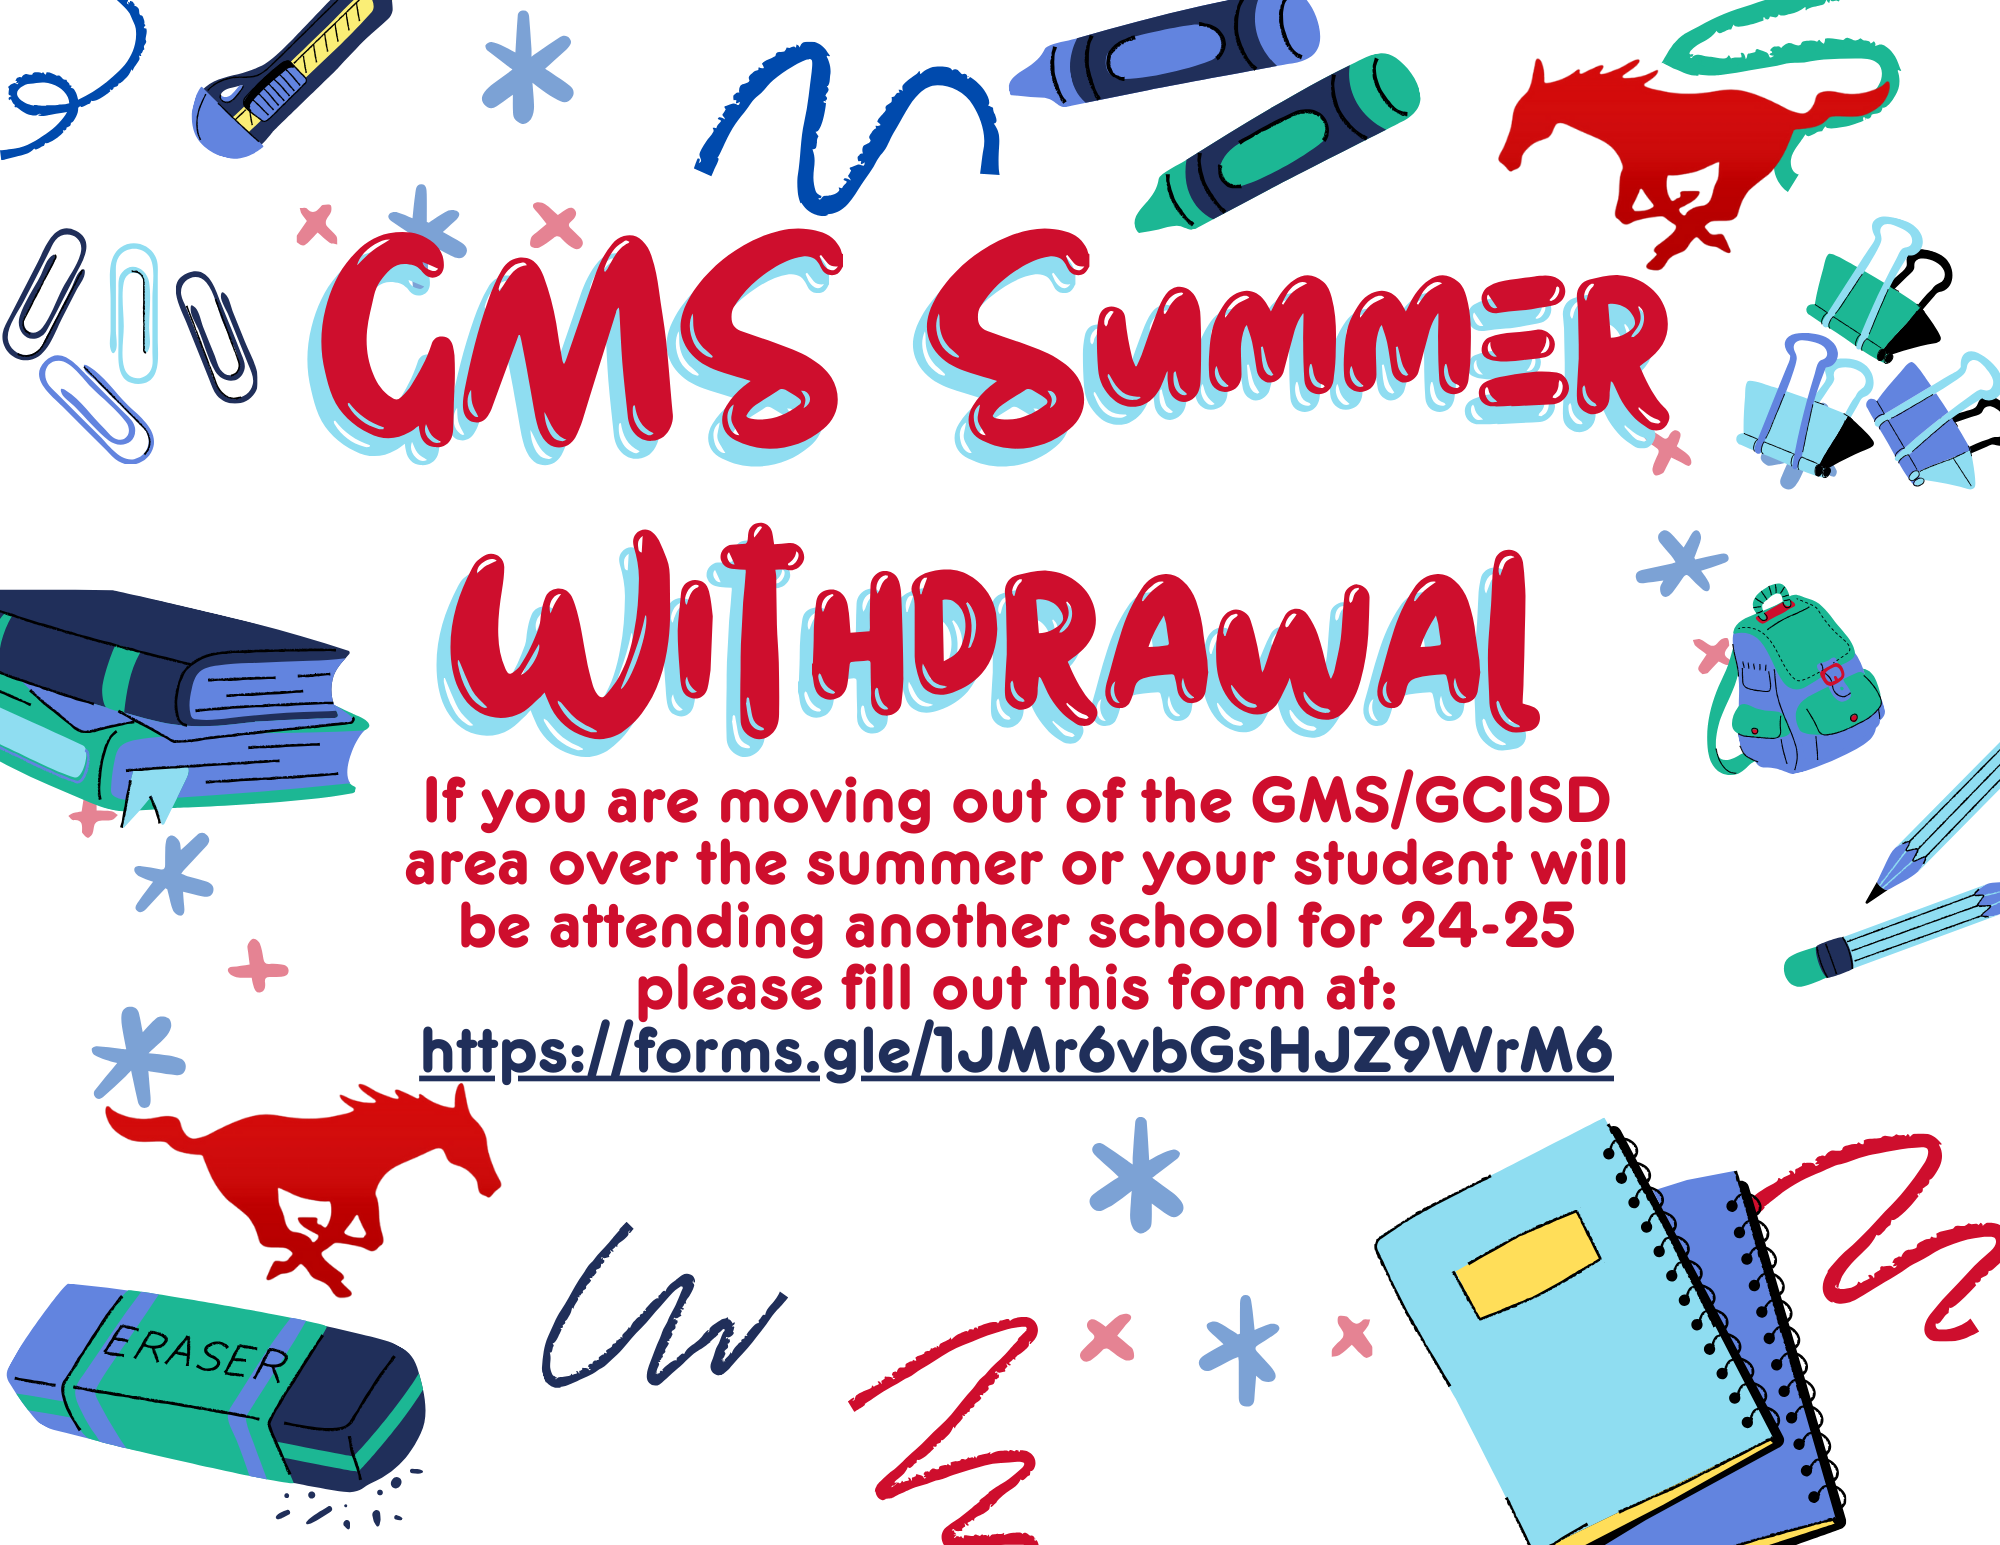 GMS Summer withdrawal: Same information as below